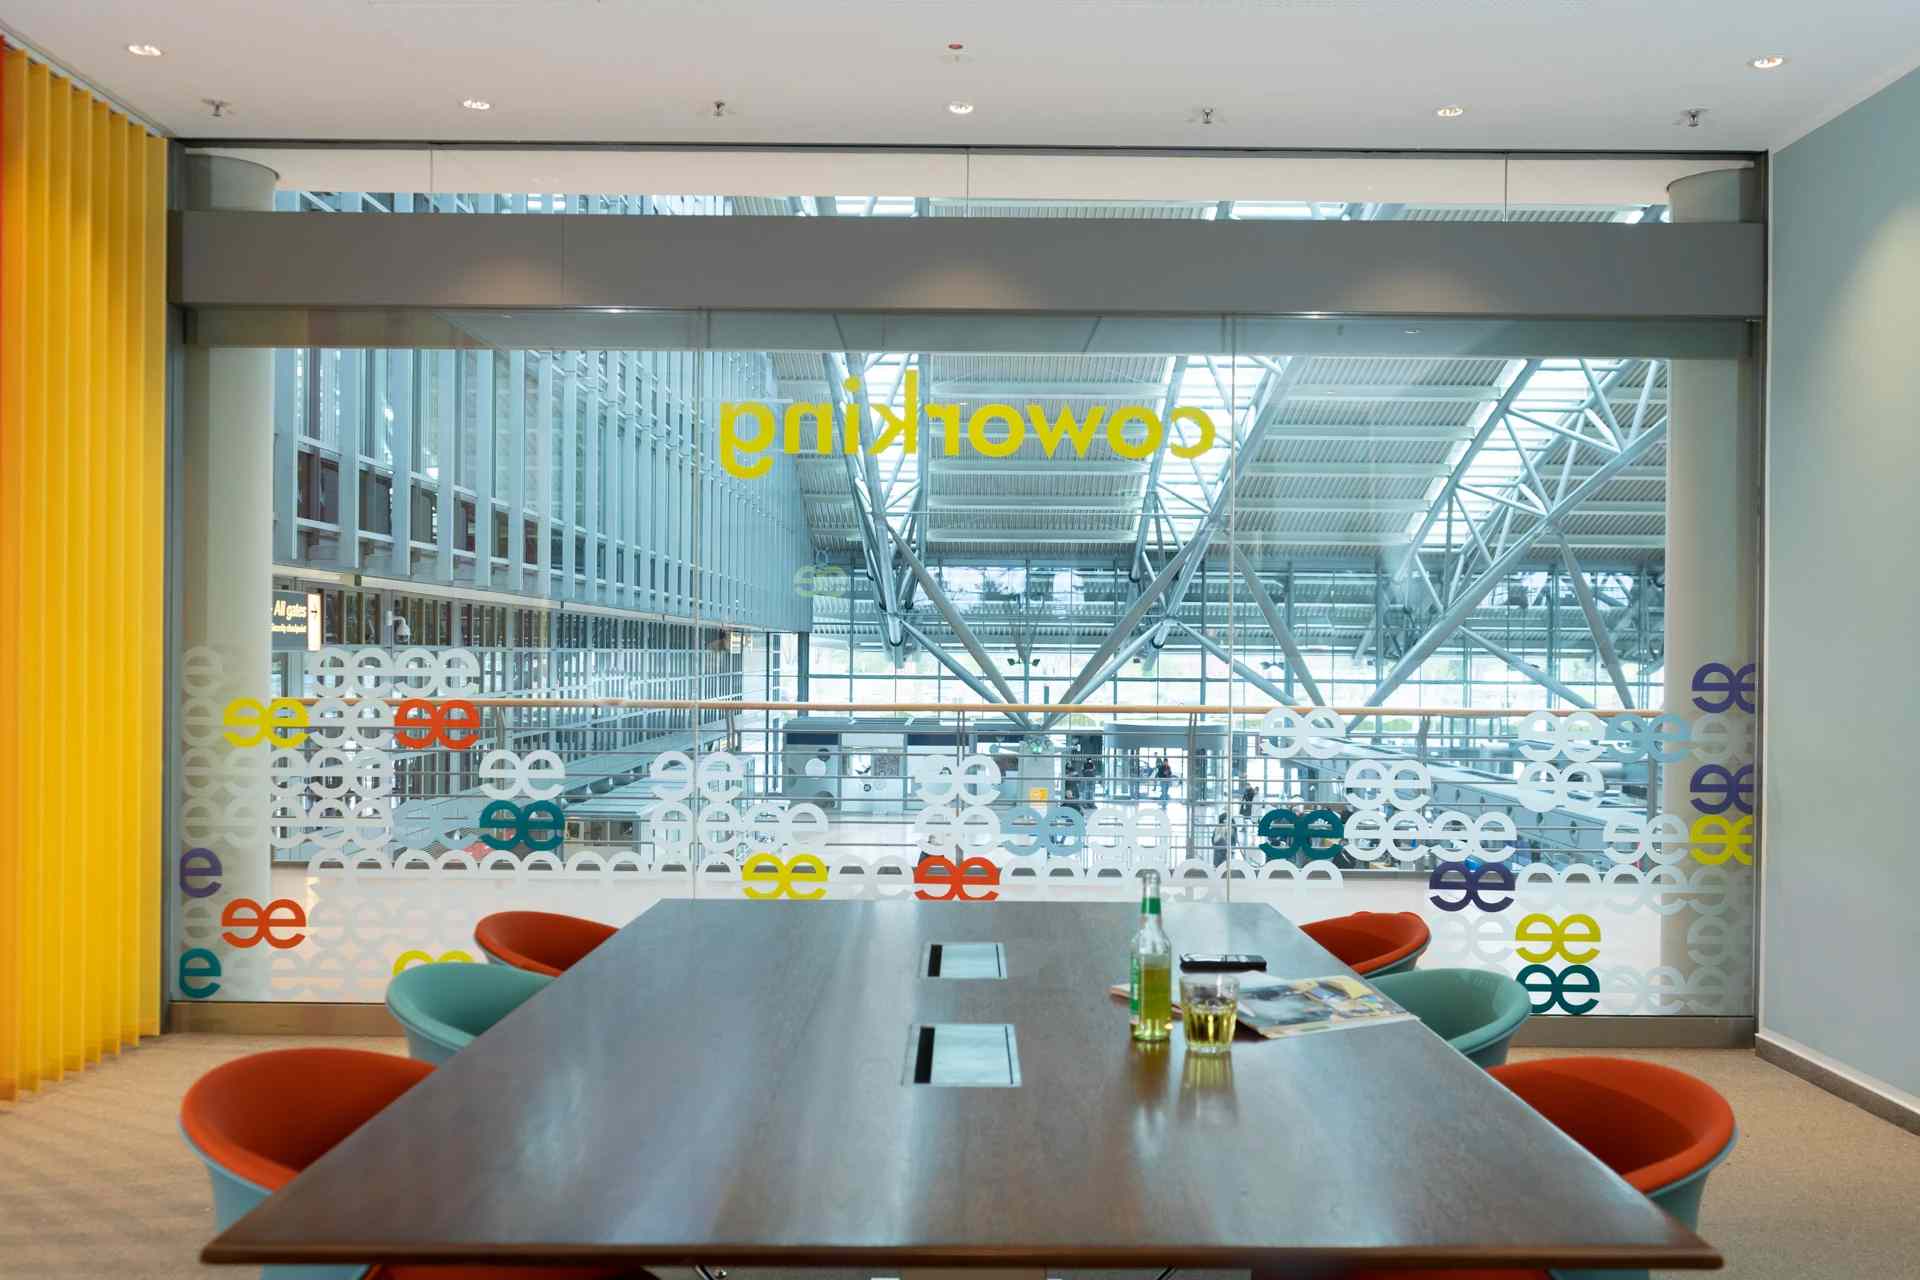 Sala de reuniones instalada por la empresa Beehive en el aeropuerto de Hamburgo